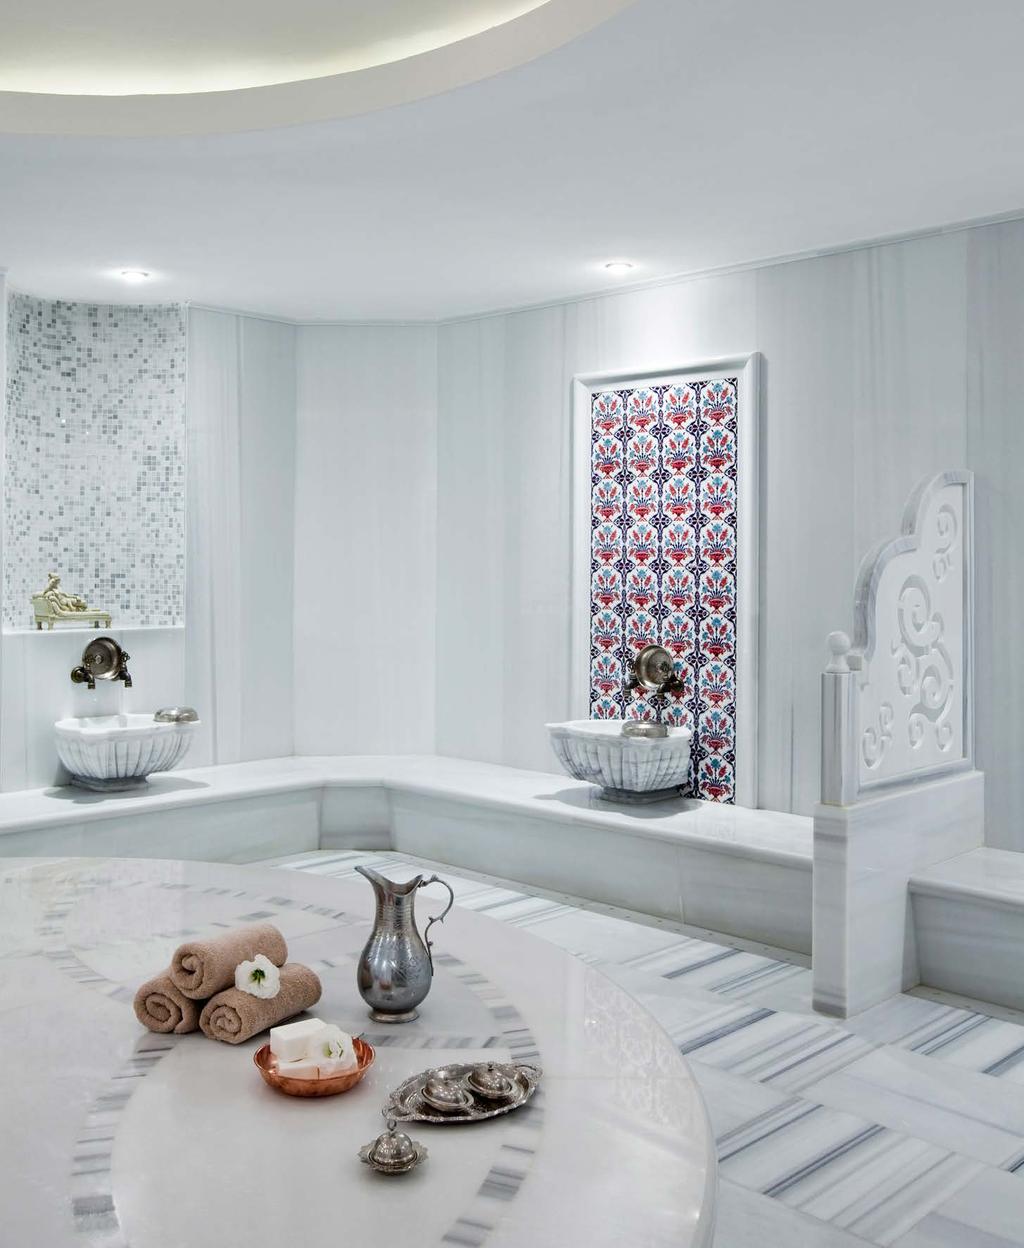 12 HAMAM Turkish Bath Hamam, binlerce yıldır temizlenmenin ve arınmanın en keyifli ritüellerinden biridir.